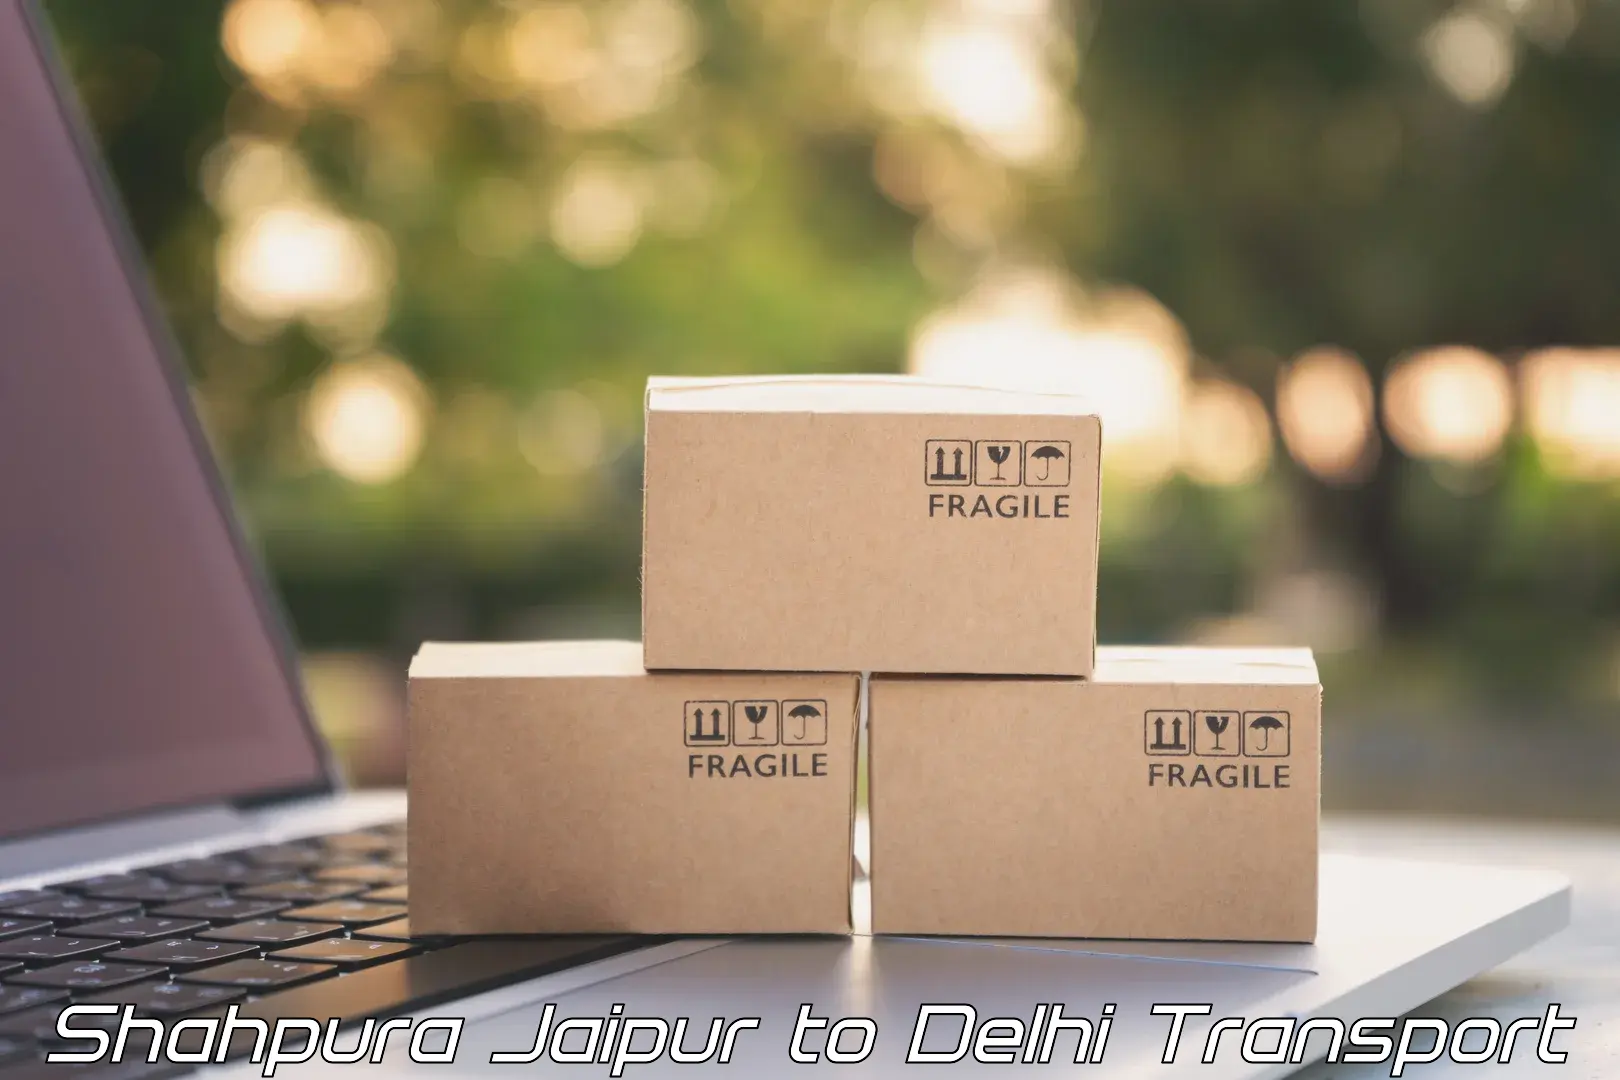 Delivery service Shahpura Jaipur to Delhi